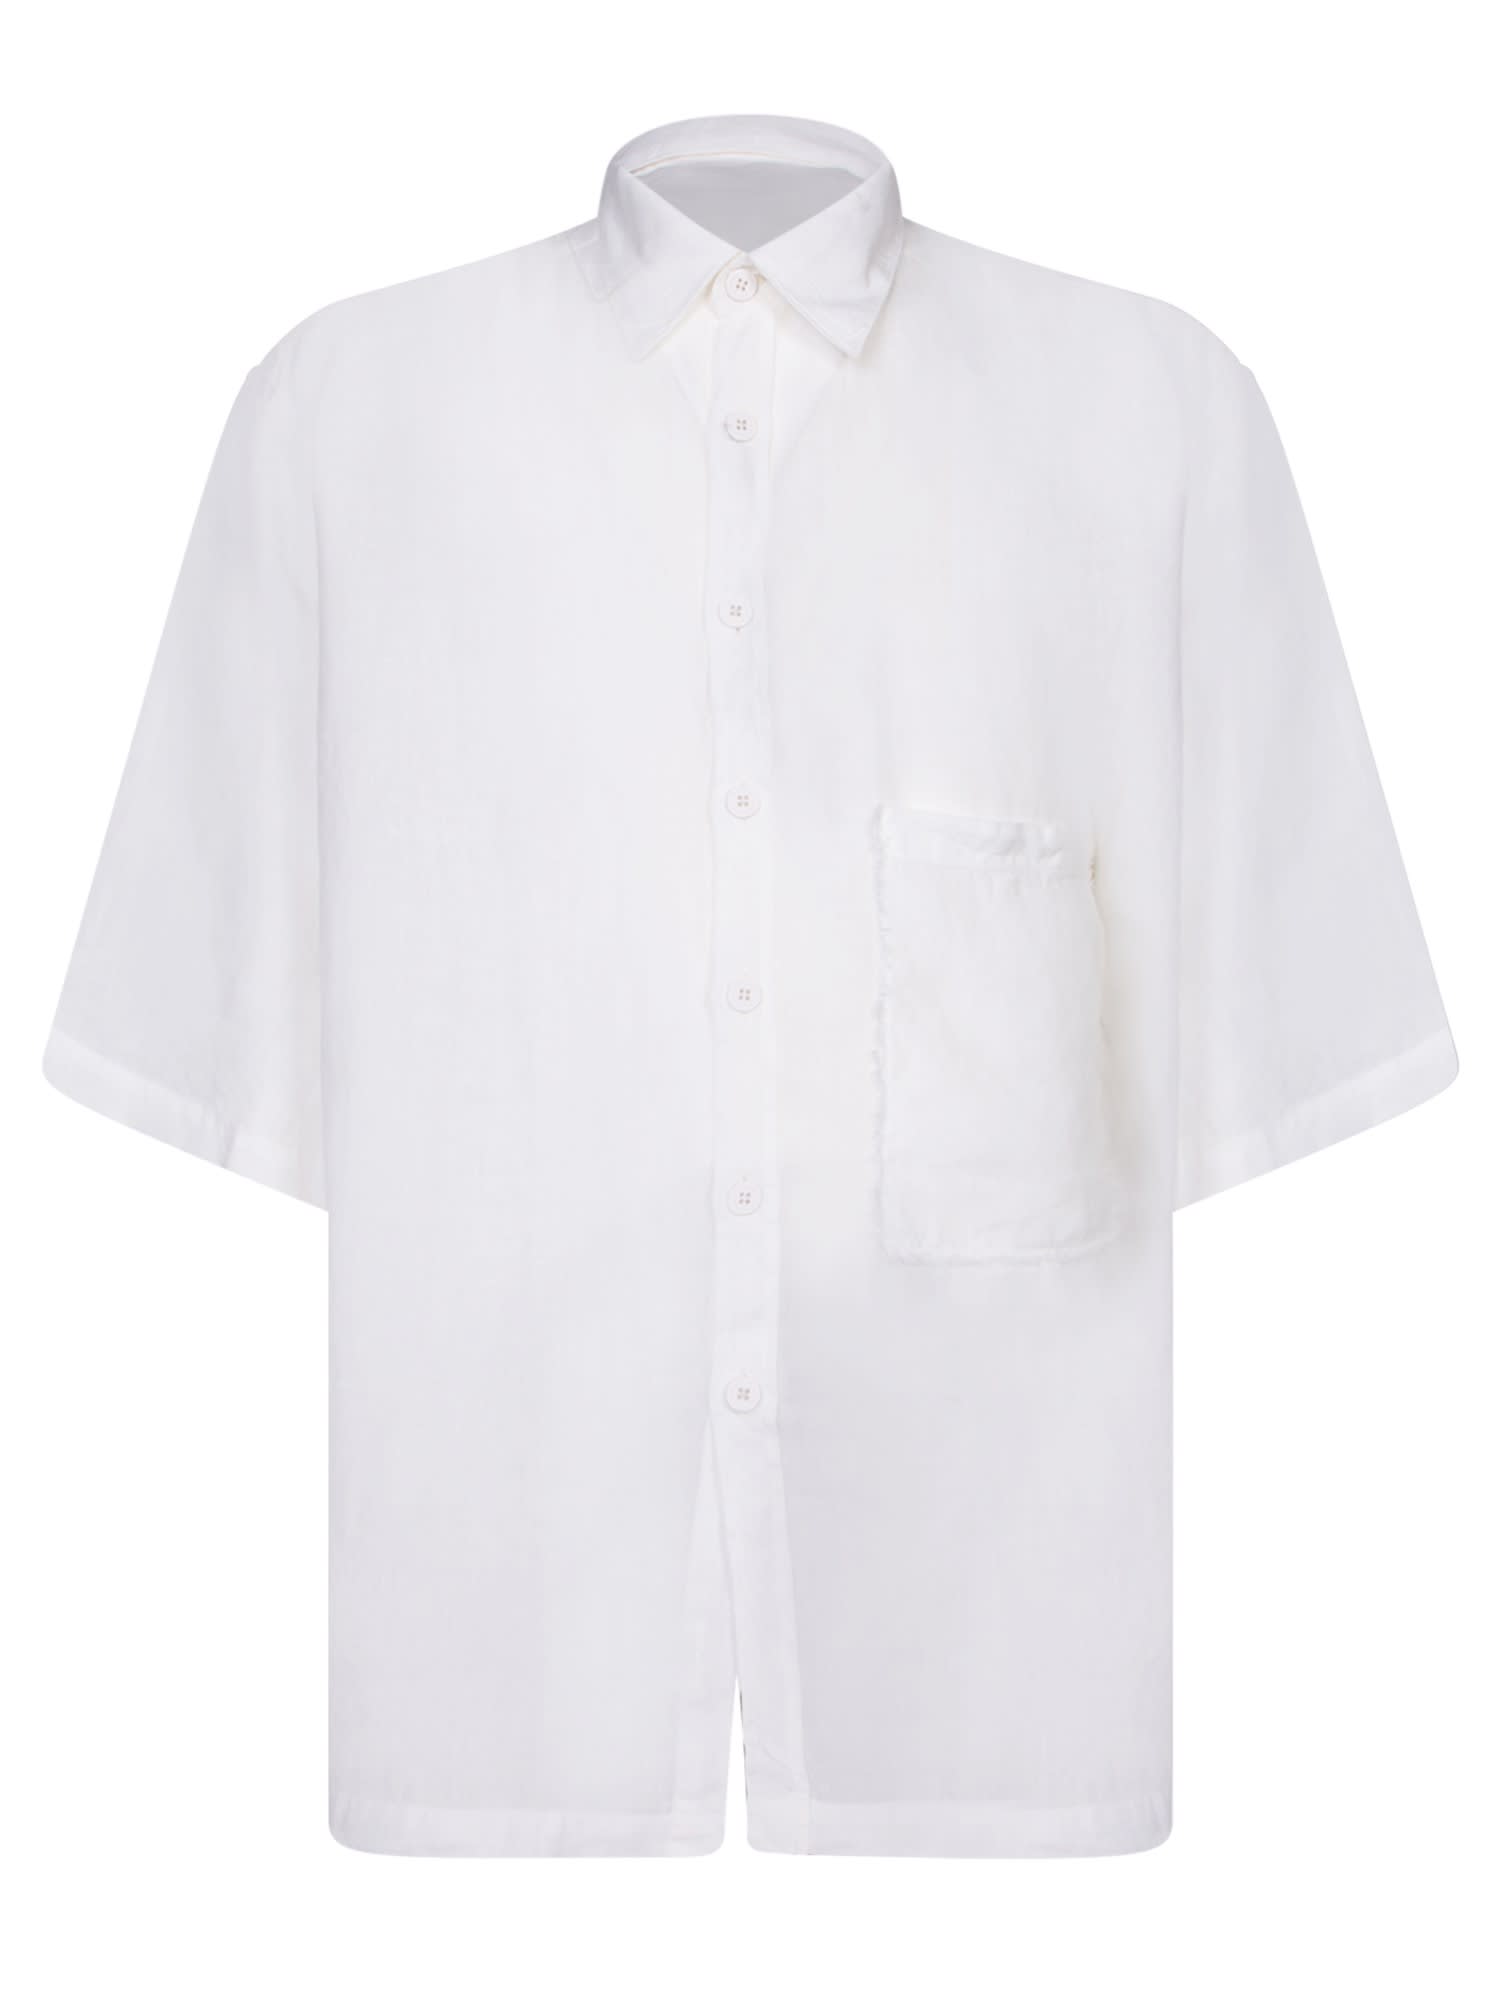 Stefano White Linen Shirt